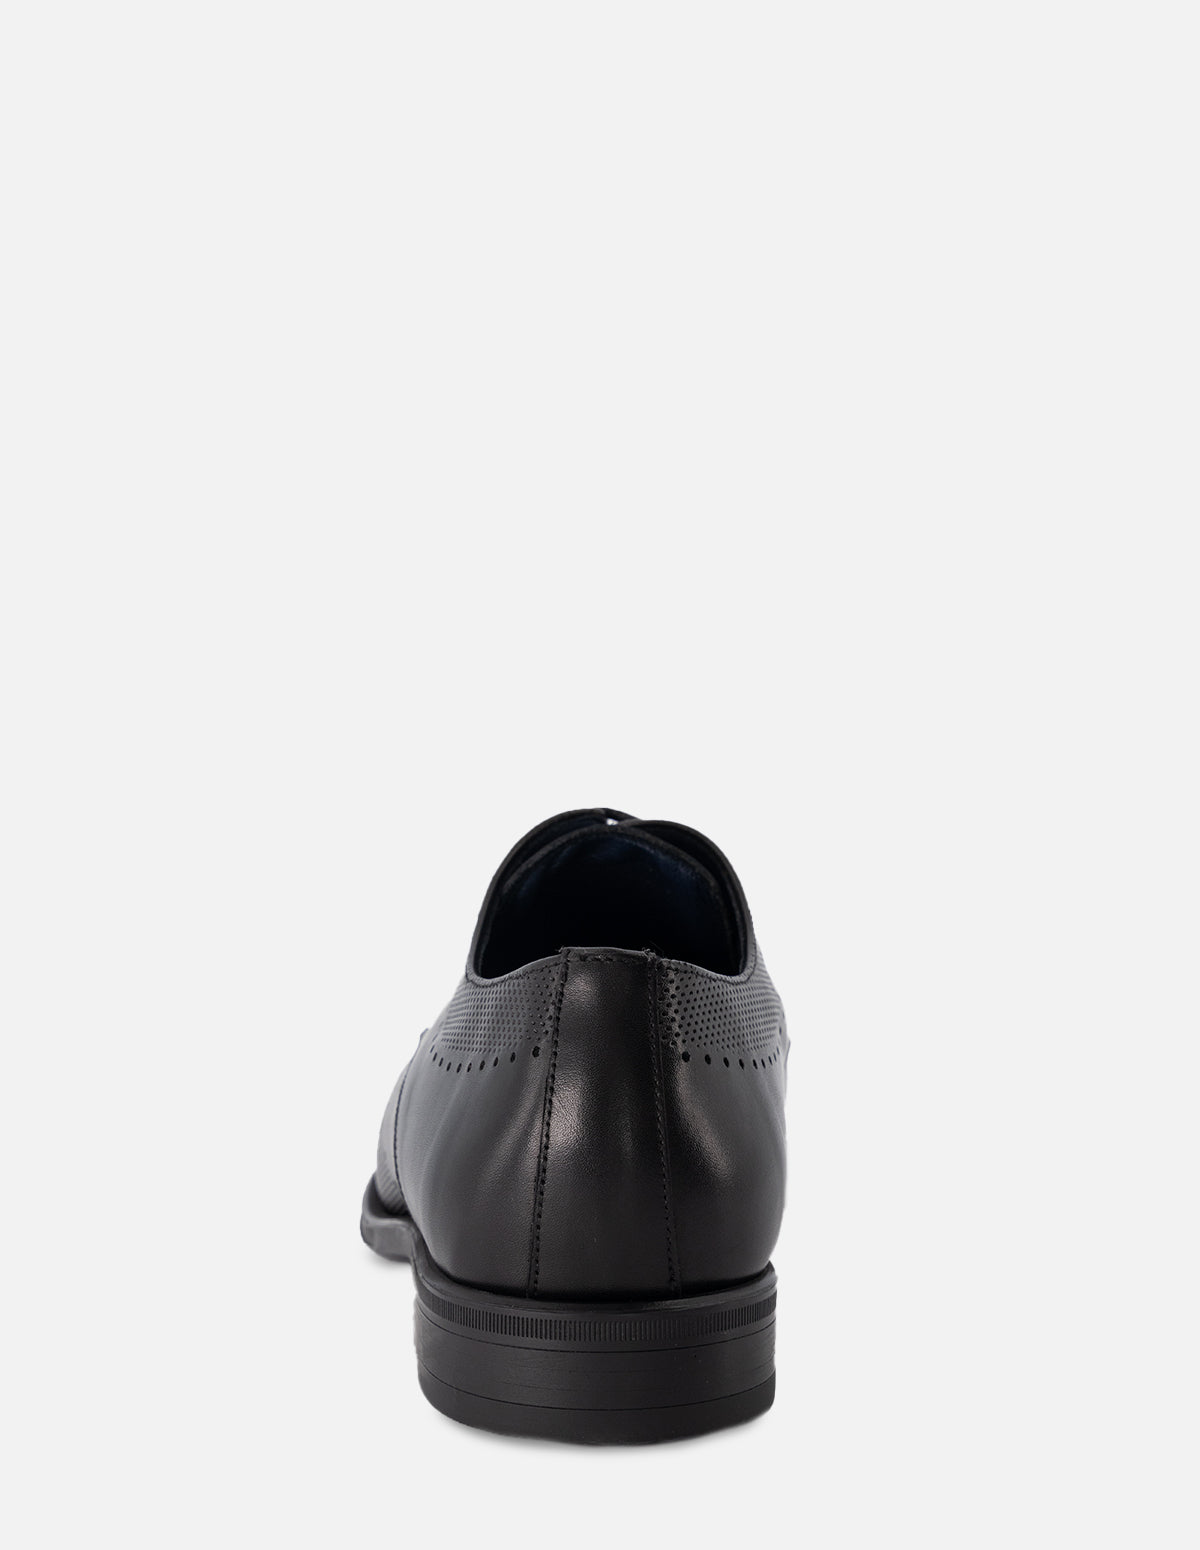 Zapato Bostoniano en piel color negro con picado para hombre